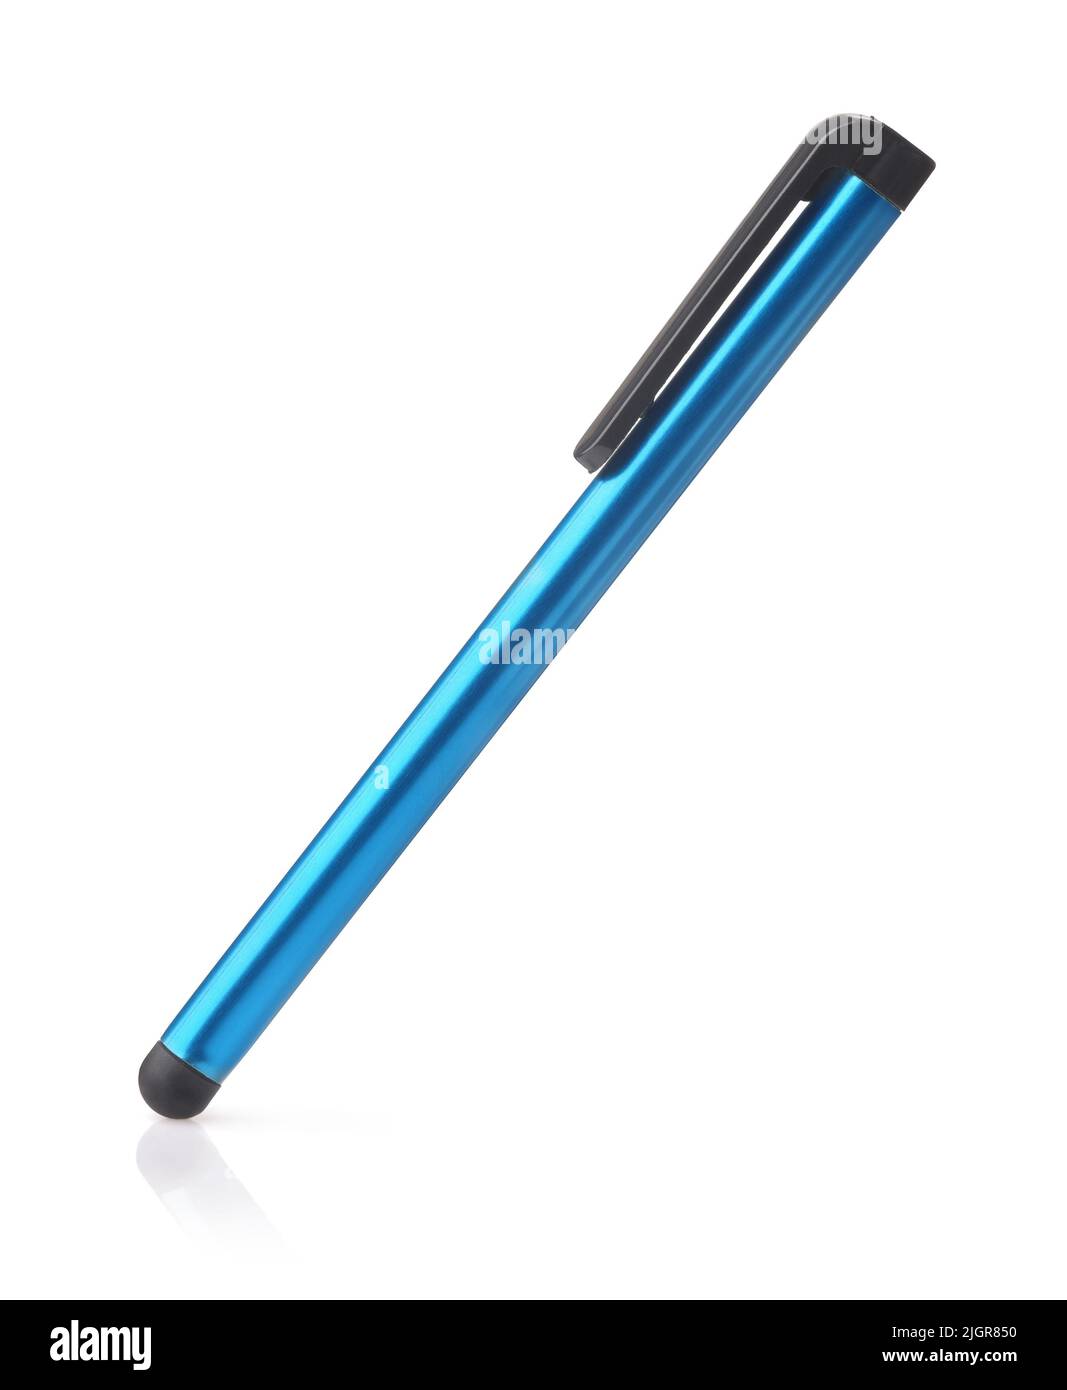 Puntero táctil capacitivo azul aislado sobre blanco Foto de stock